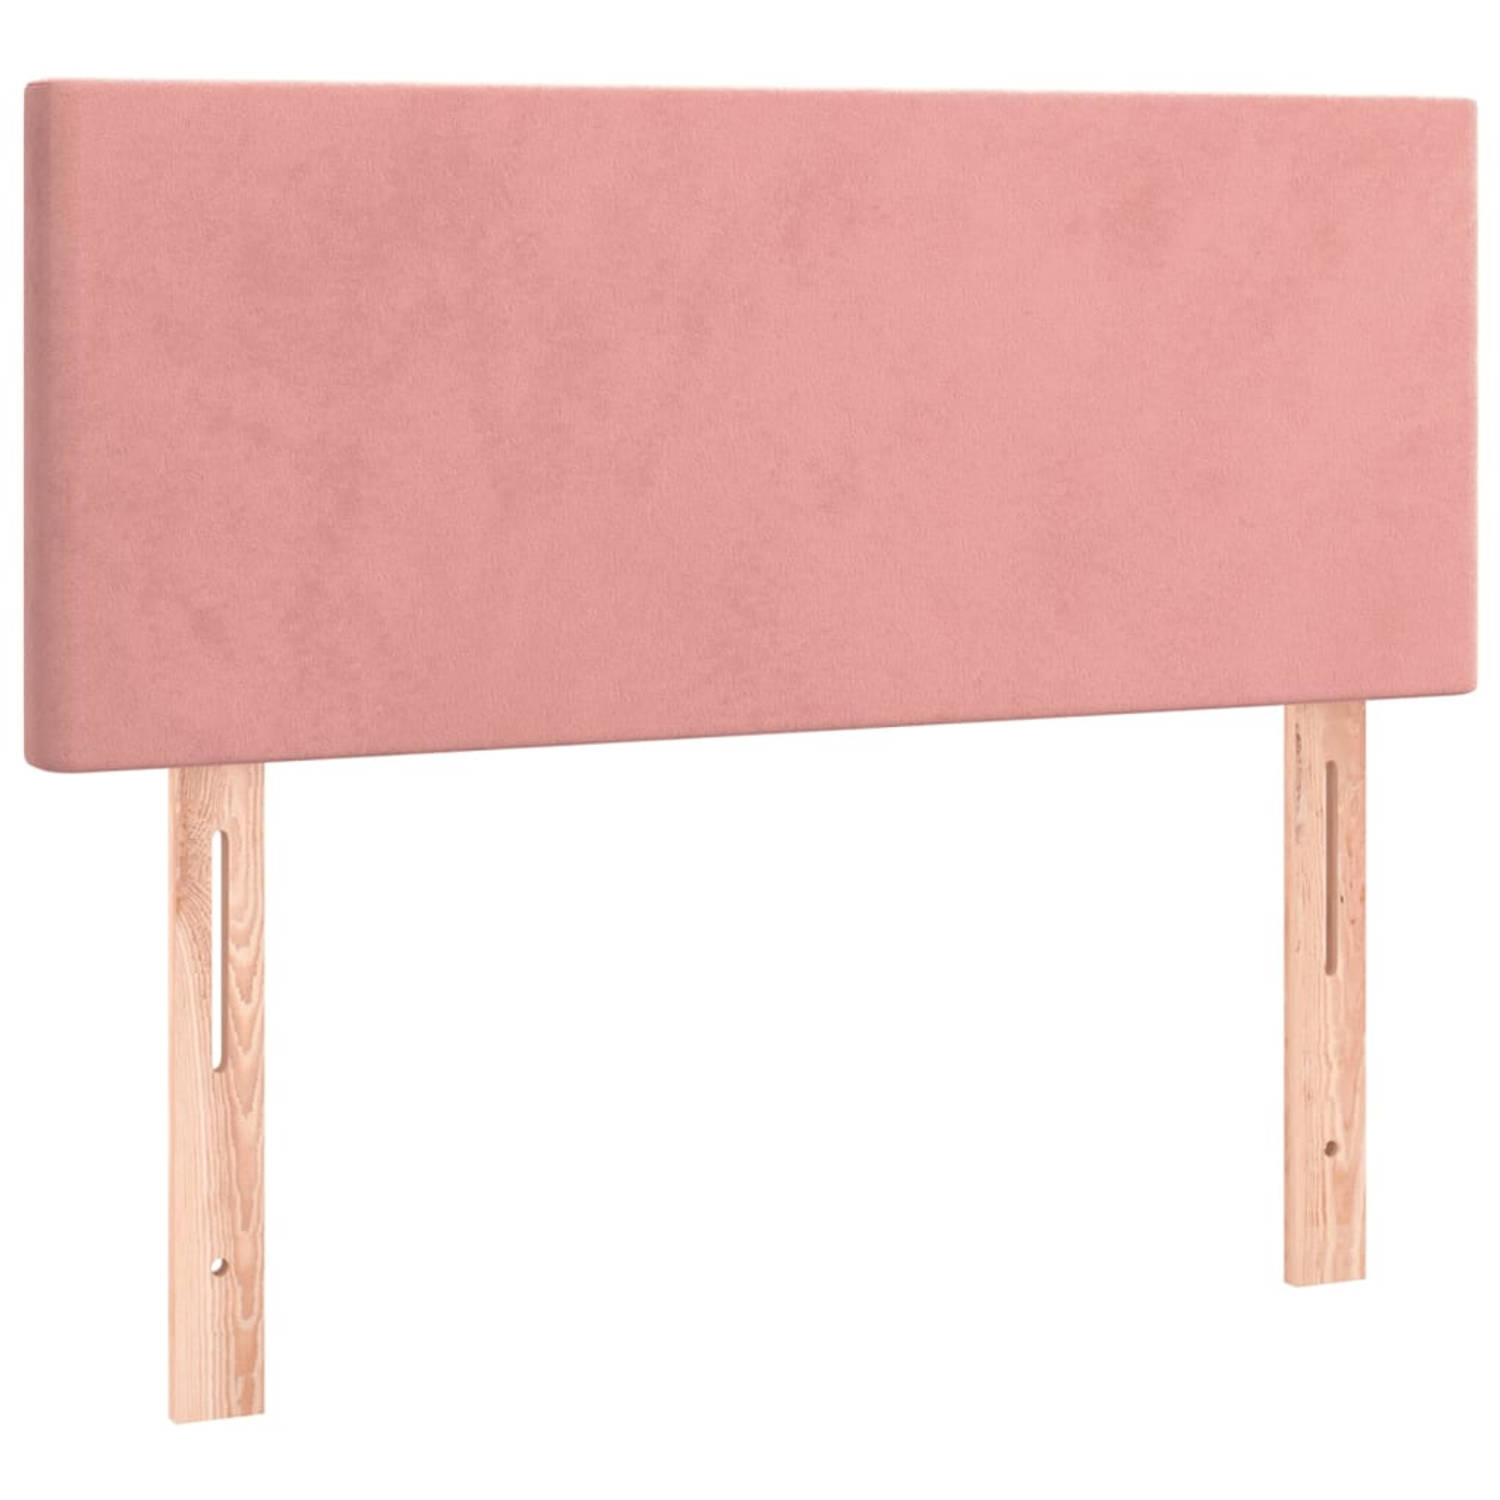 The Living Store Hoofdbord - Hoofdbord - 90 x 5 x 78/88 cm - Zacht fluweel - Stevige poten - Verstelbare hoogte - Comfortabele ondersteuning - Kleur- roze - Materiaal- stof - samen